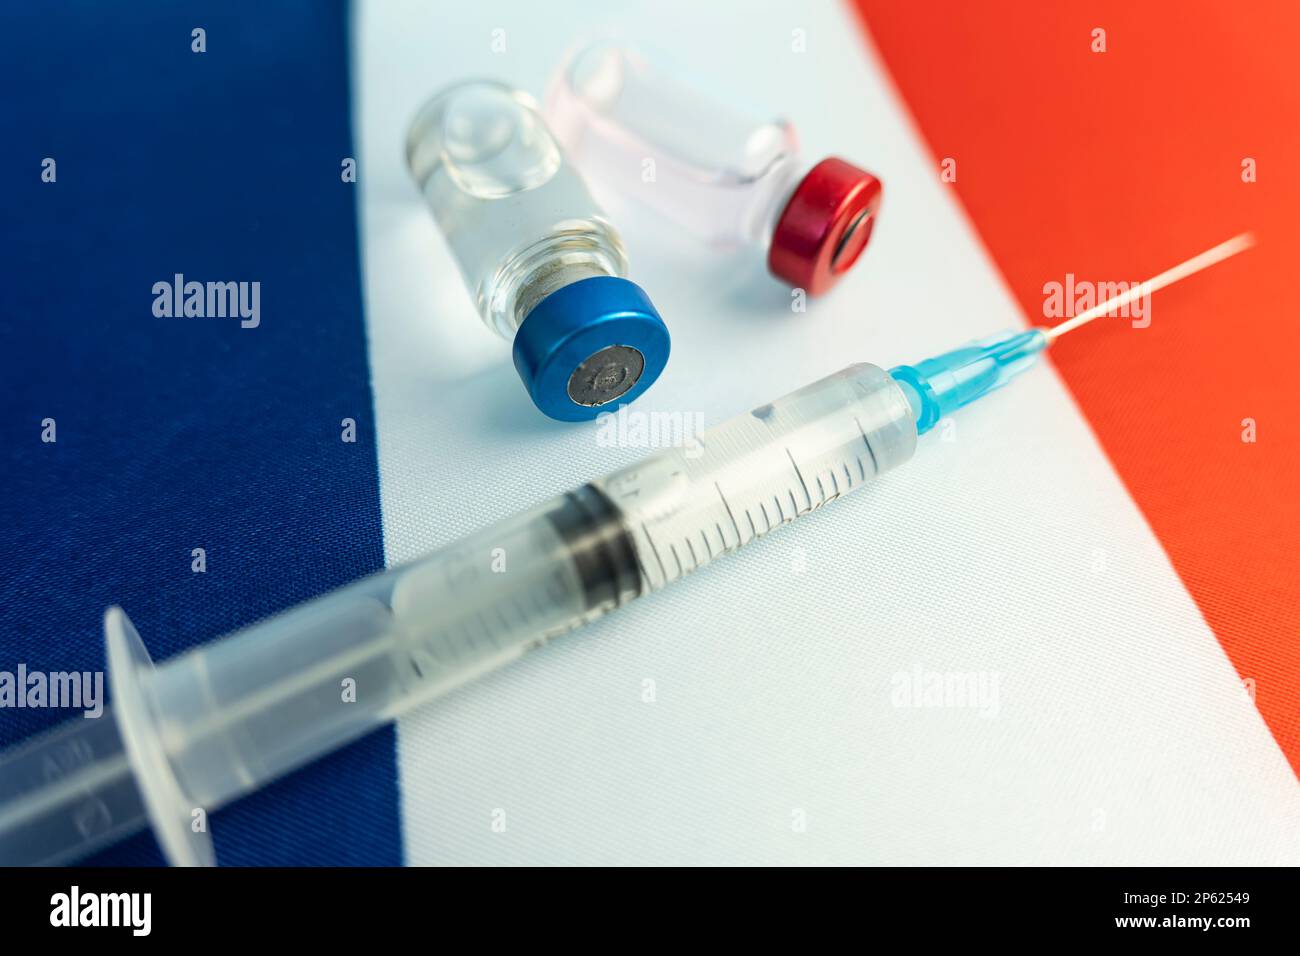 Pharmacology and Medicine France Concept. vaccino contro il coronavirus covid. Fiale di vaccino, siringa sullo sfondo della bandiera nazionale. nazione Foto Stock